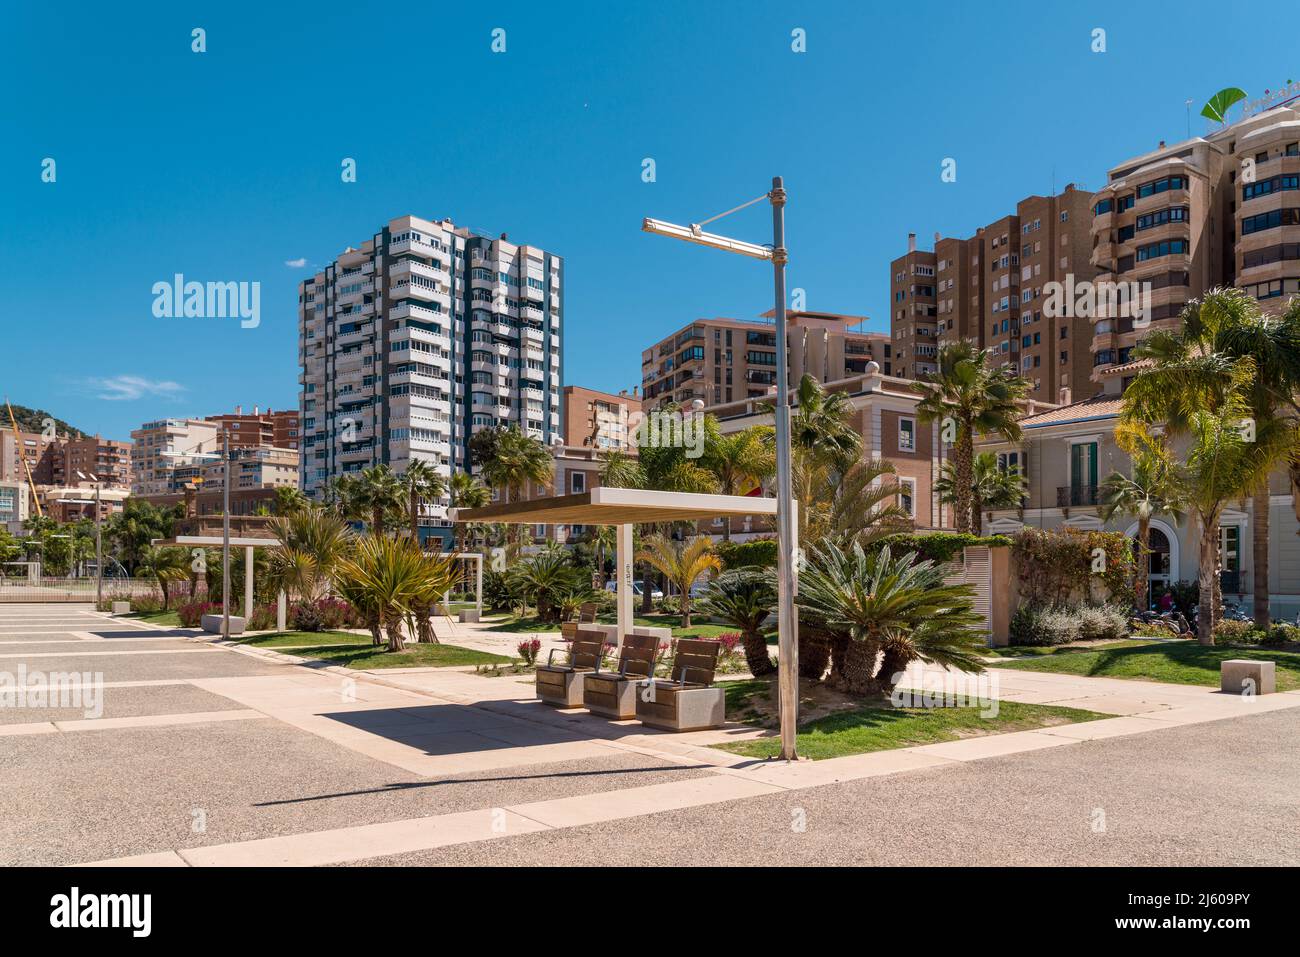 Panoramablick auf die Stadt Malaga, die Gegend von Muelle Uno. Wunderschöne Parks und Erholungszonen entlang des Hafengebiets von 'muelle uno'. Bars und Restaurants. Stockfoto